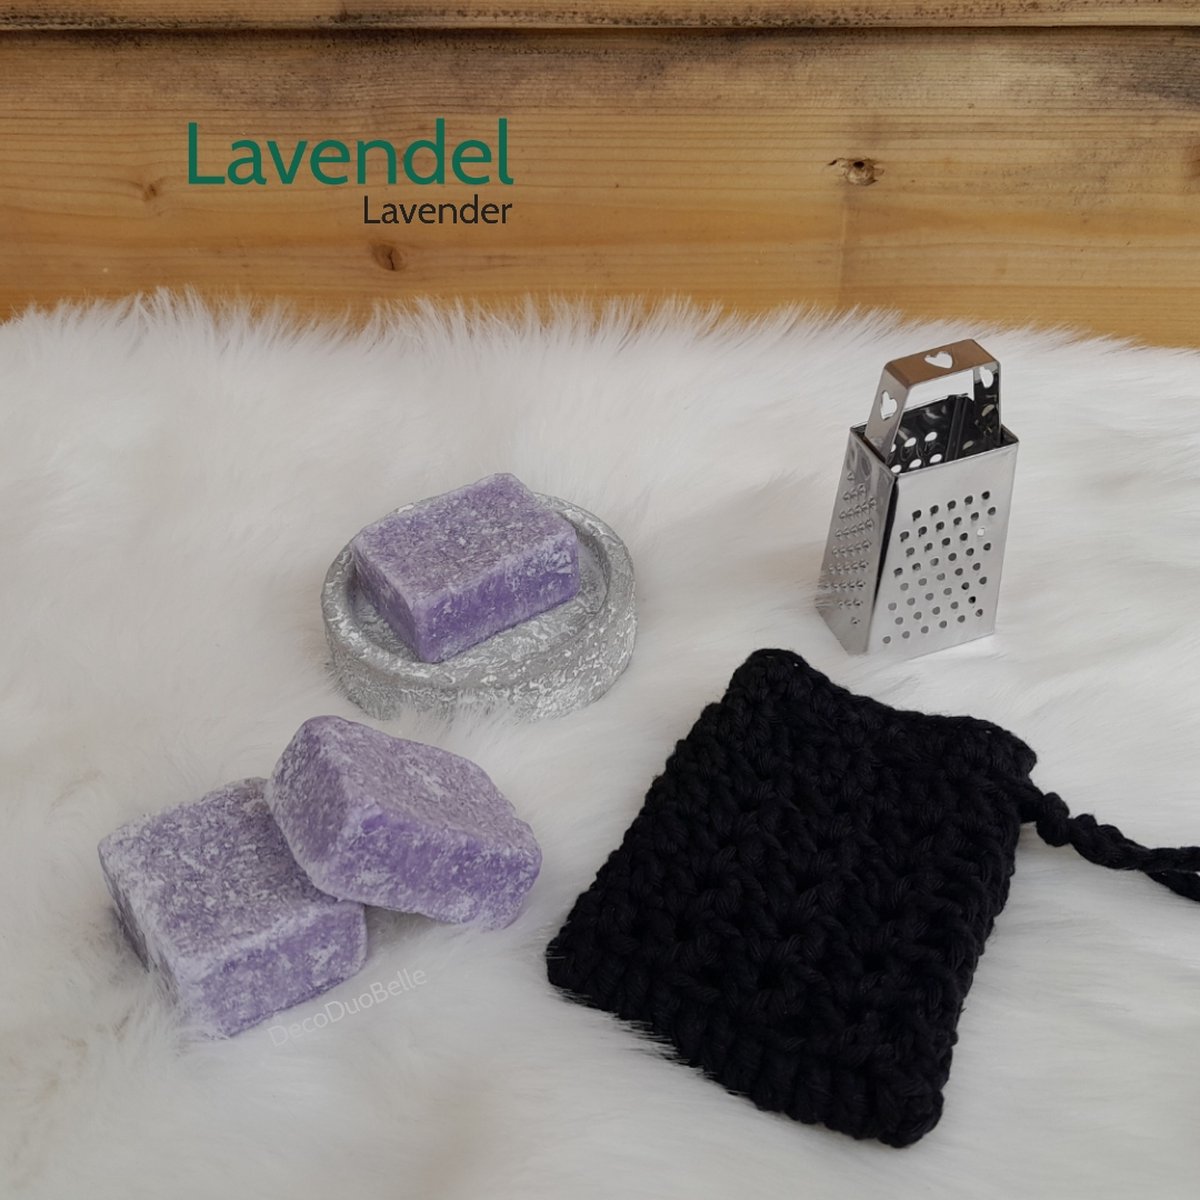 3 Amberblokjes Lavendel - Geurblokjes Set met Schaaltje, Rasp en Gehaakt Geurzakje - Giftset